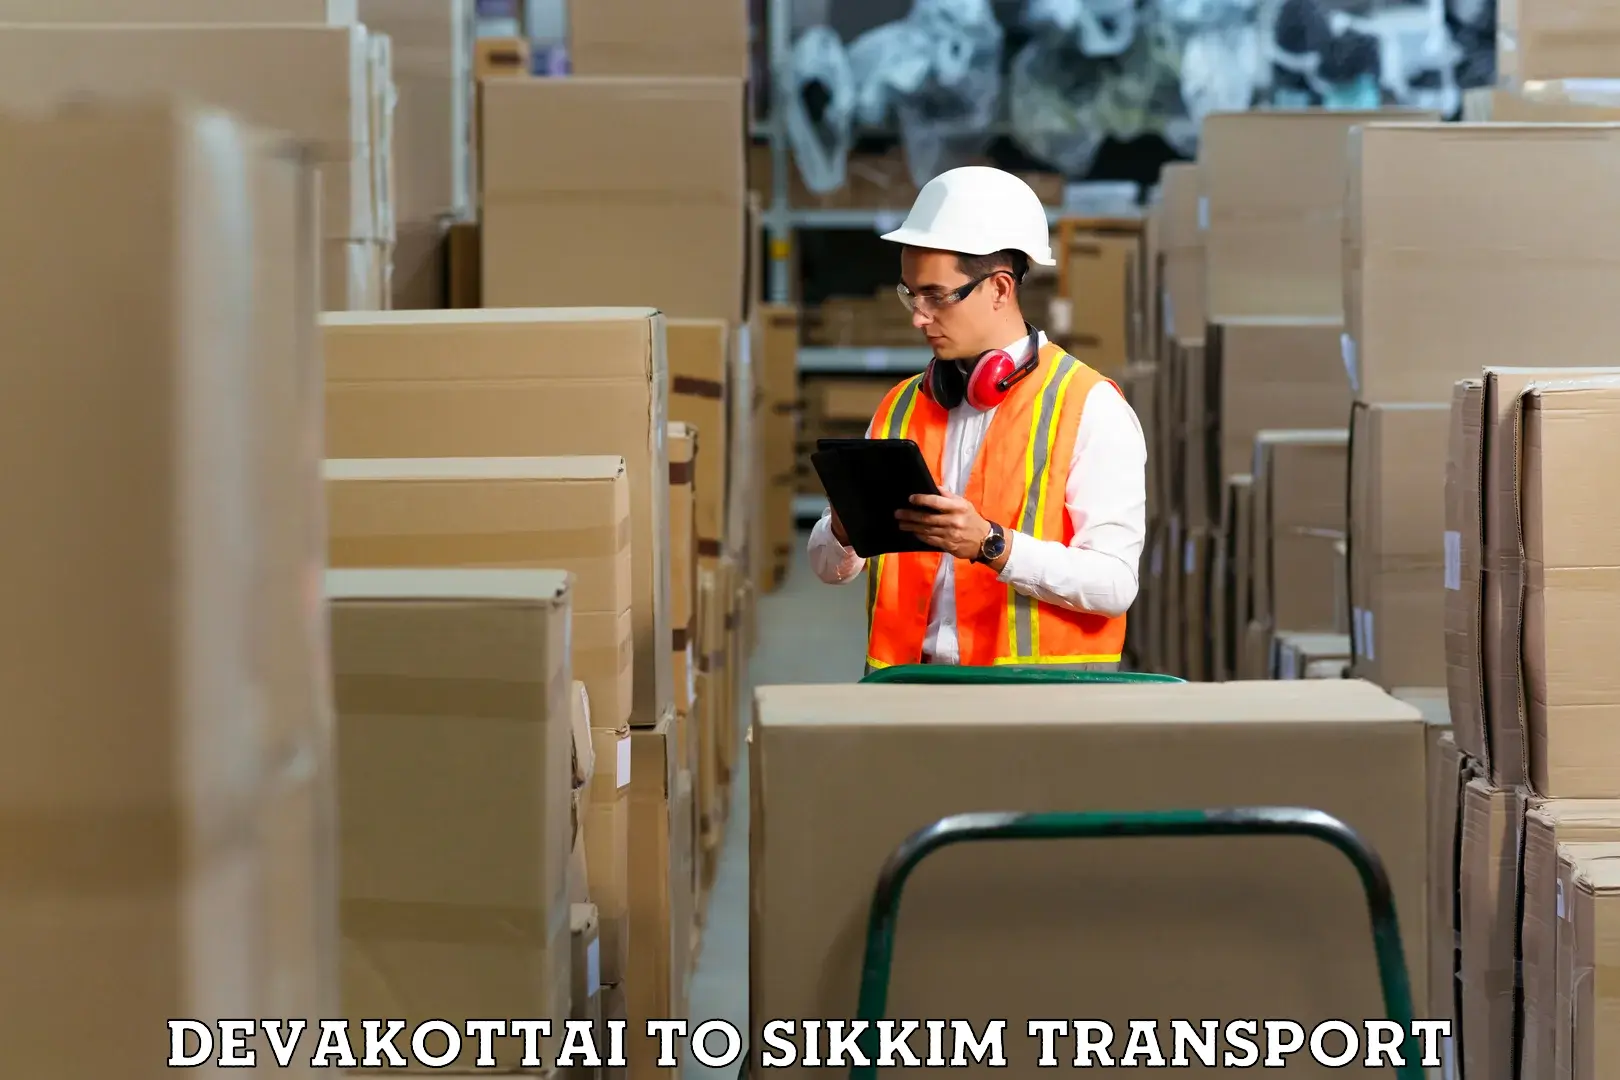 Container transport service Devakottai to NIT Sikkim